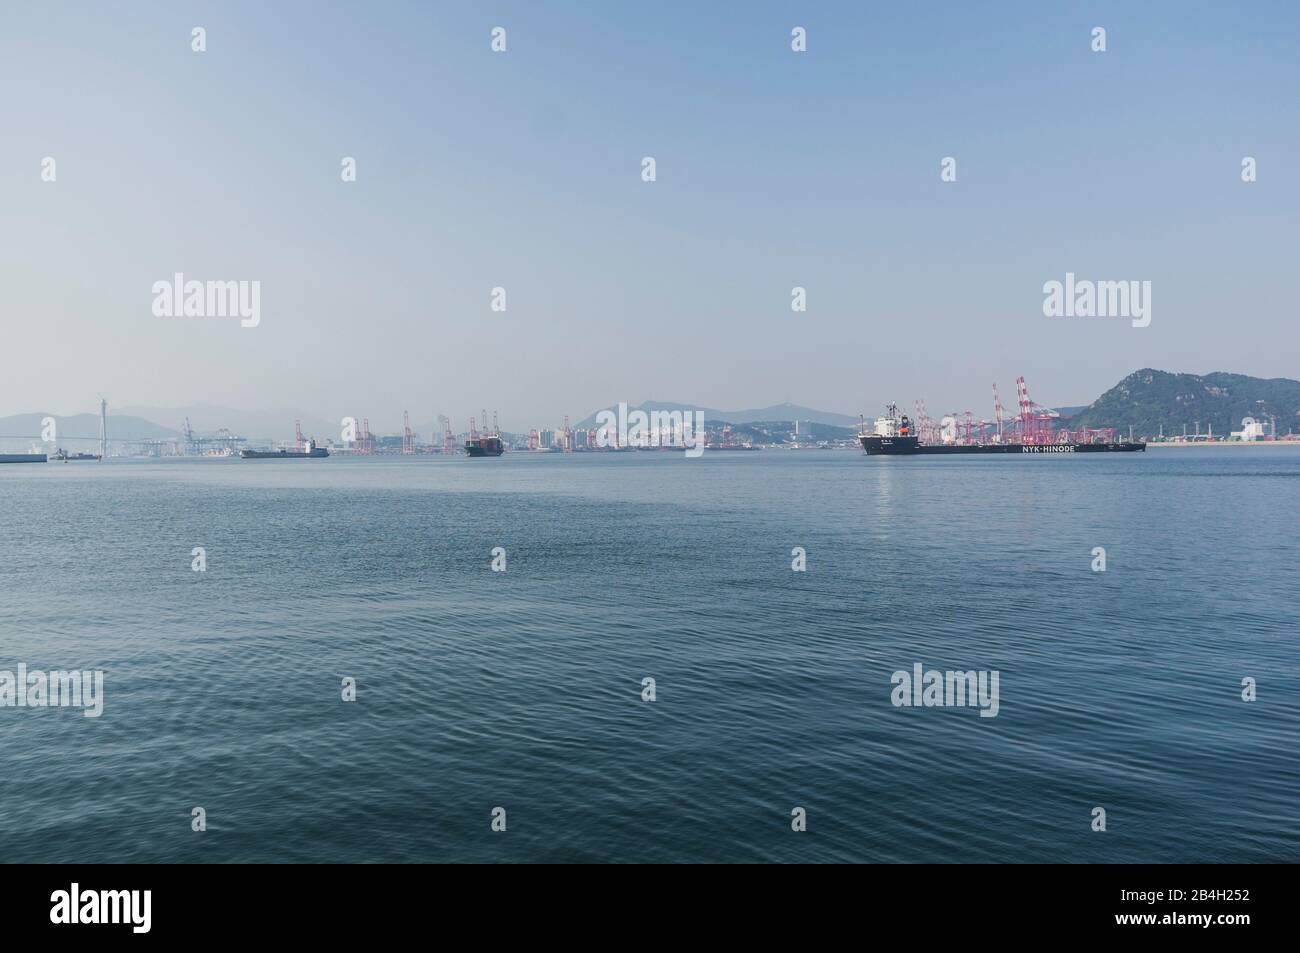 Sea, Harbors, Ship, Container, Cargo Ship, Busan, Korea Stock Photo